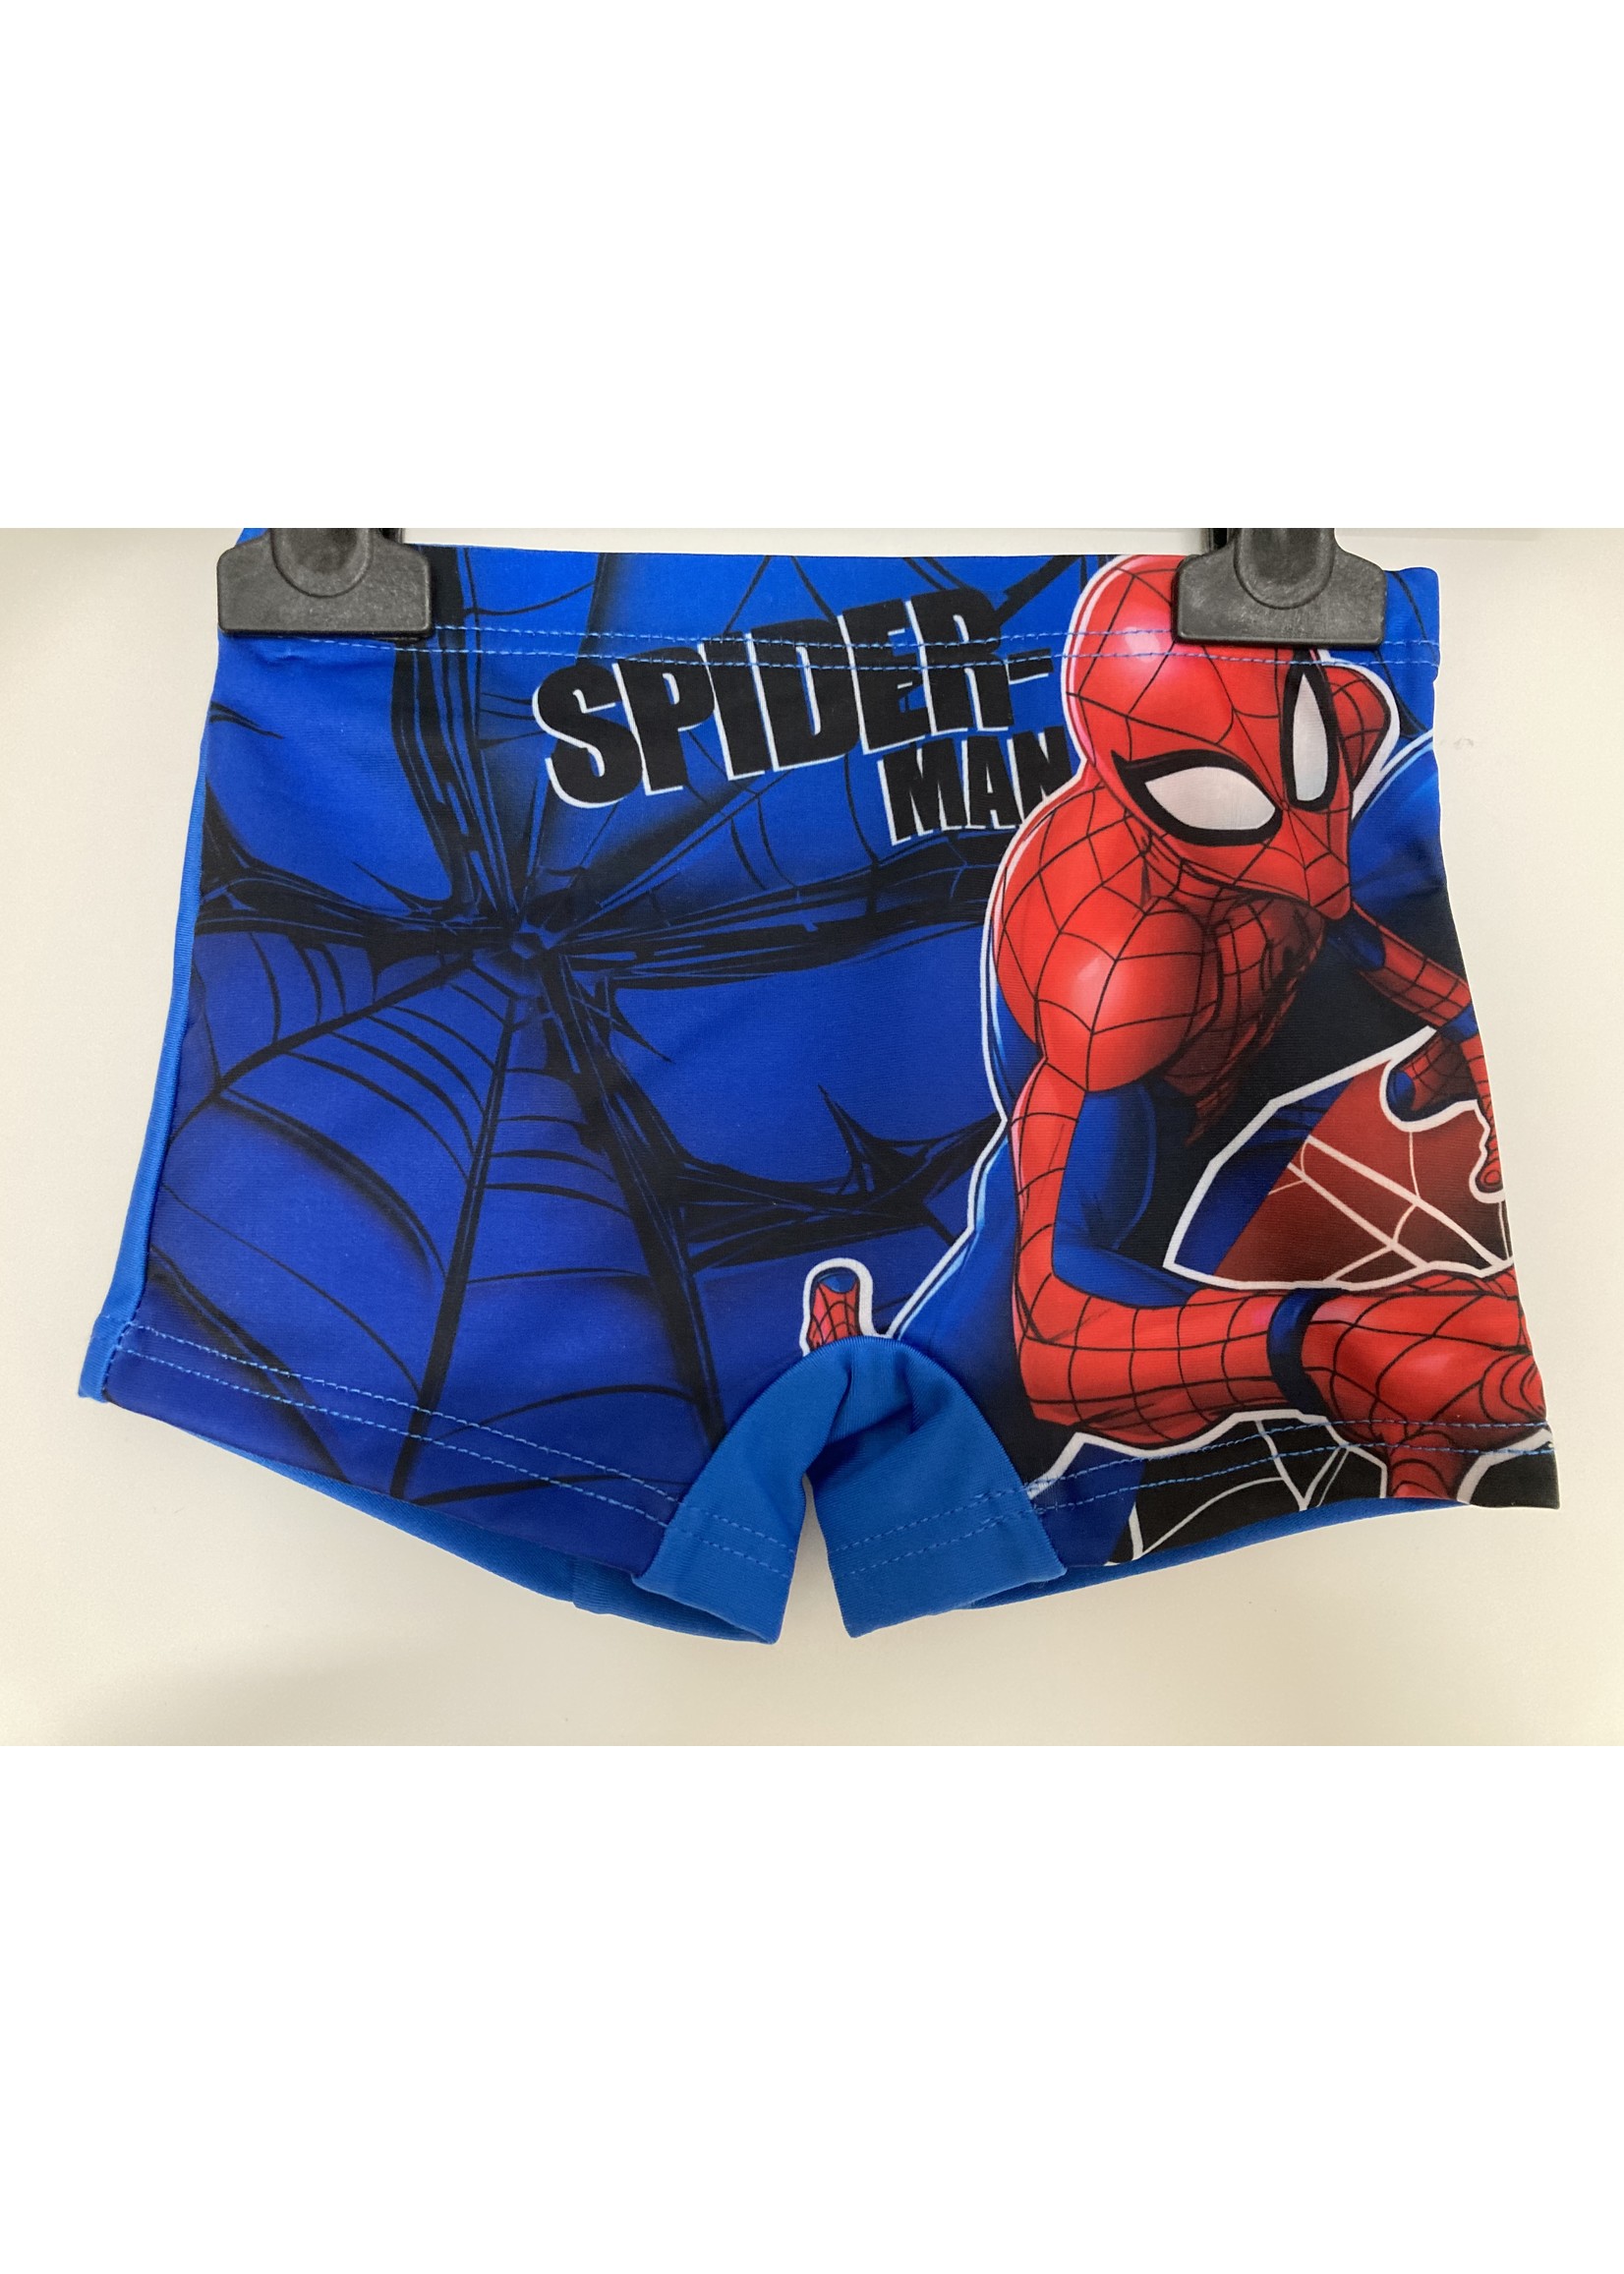 Marvel Spiderman swimsuit from Marvel blue